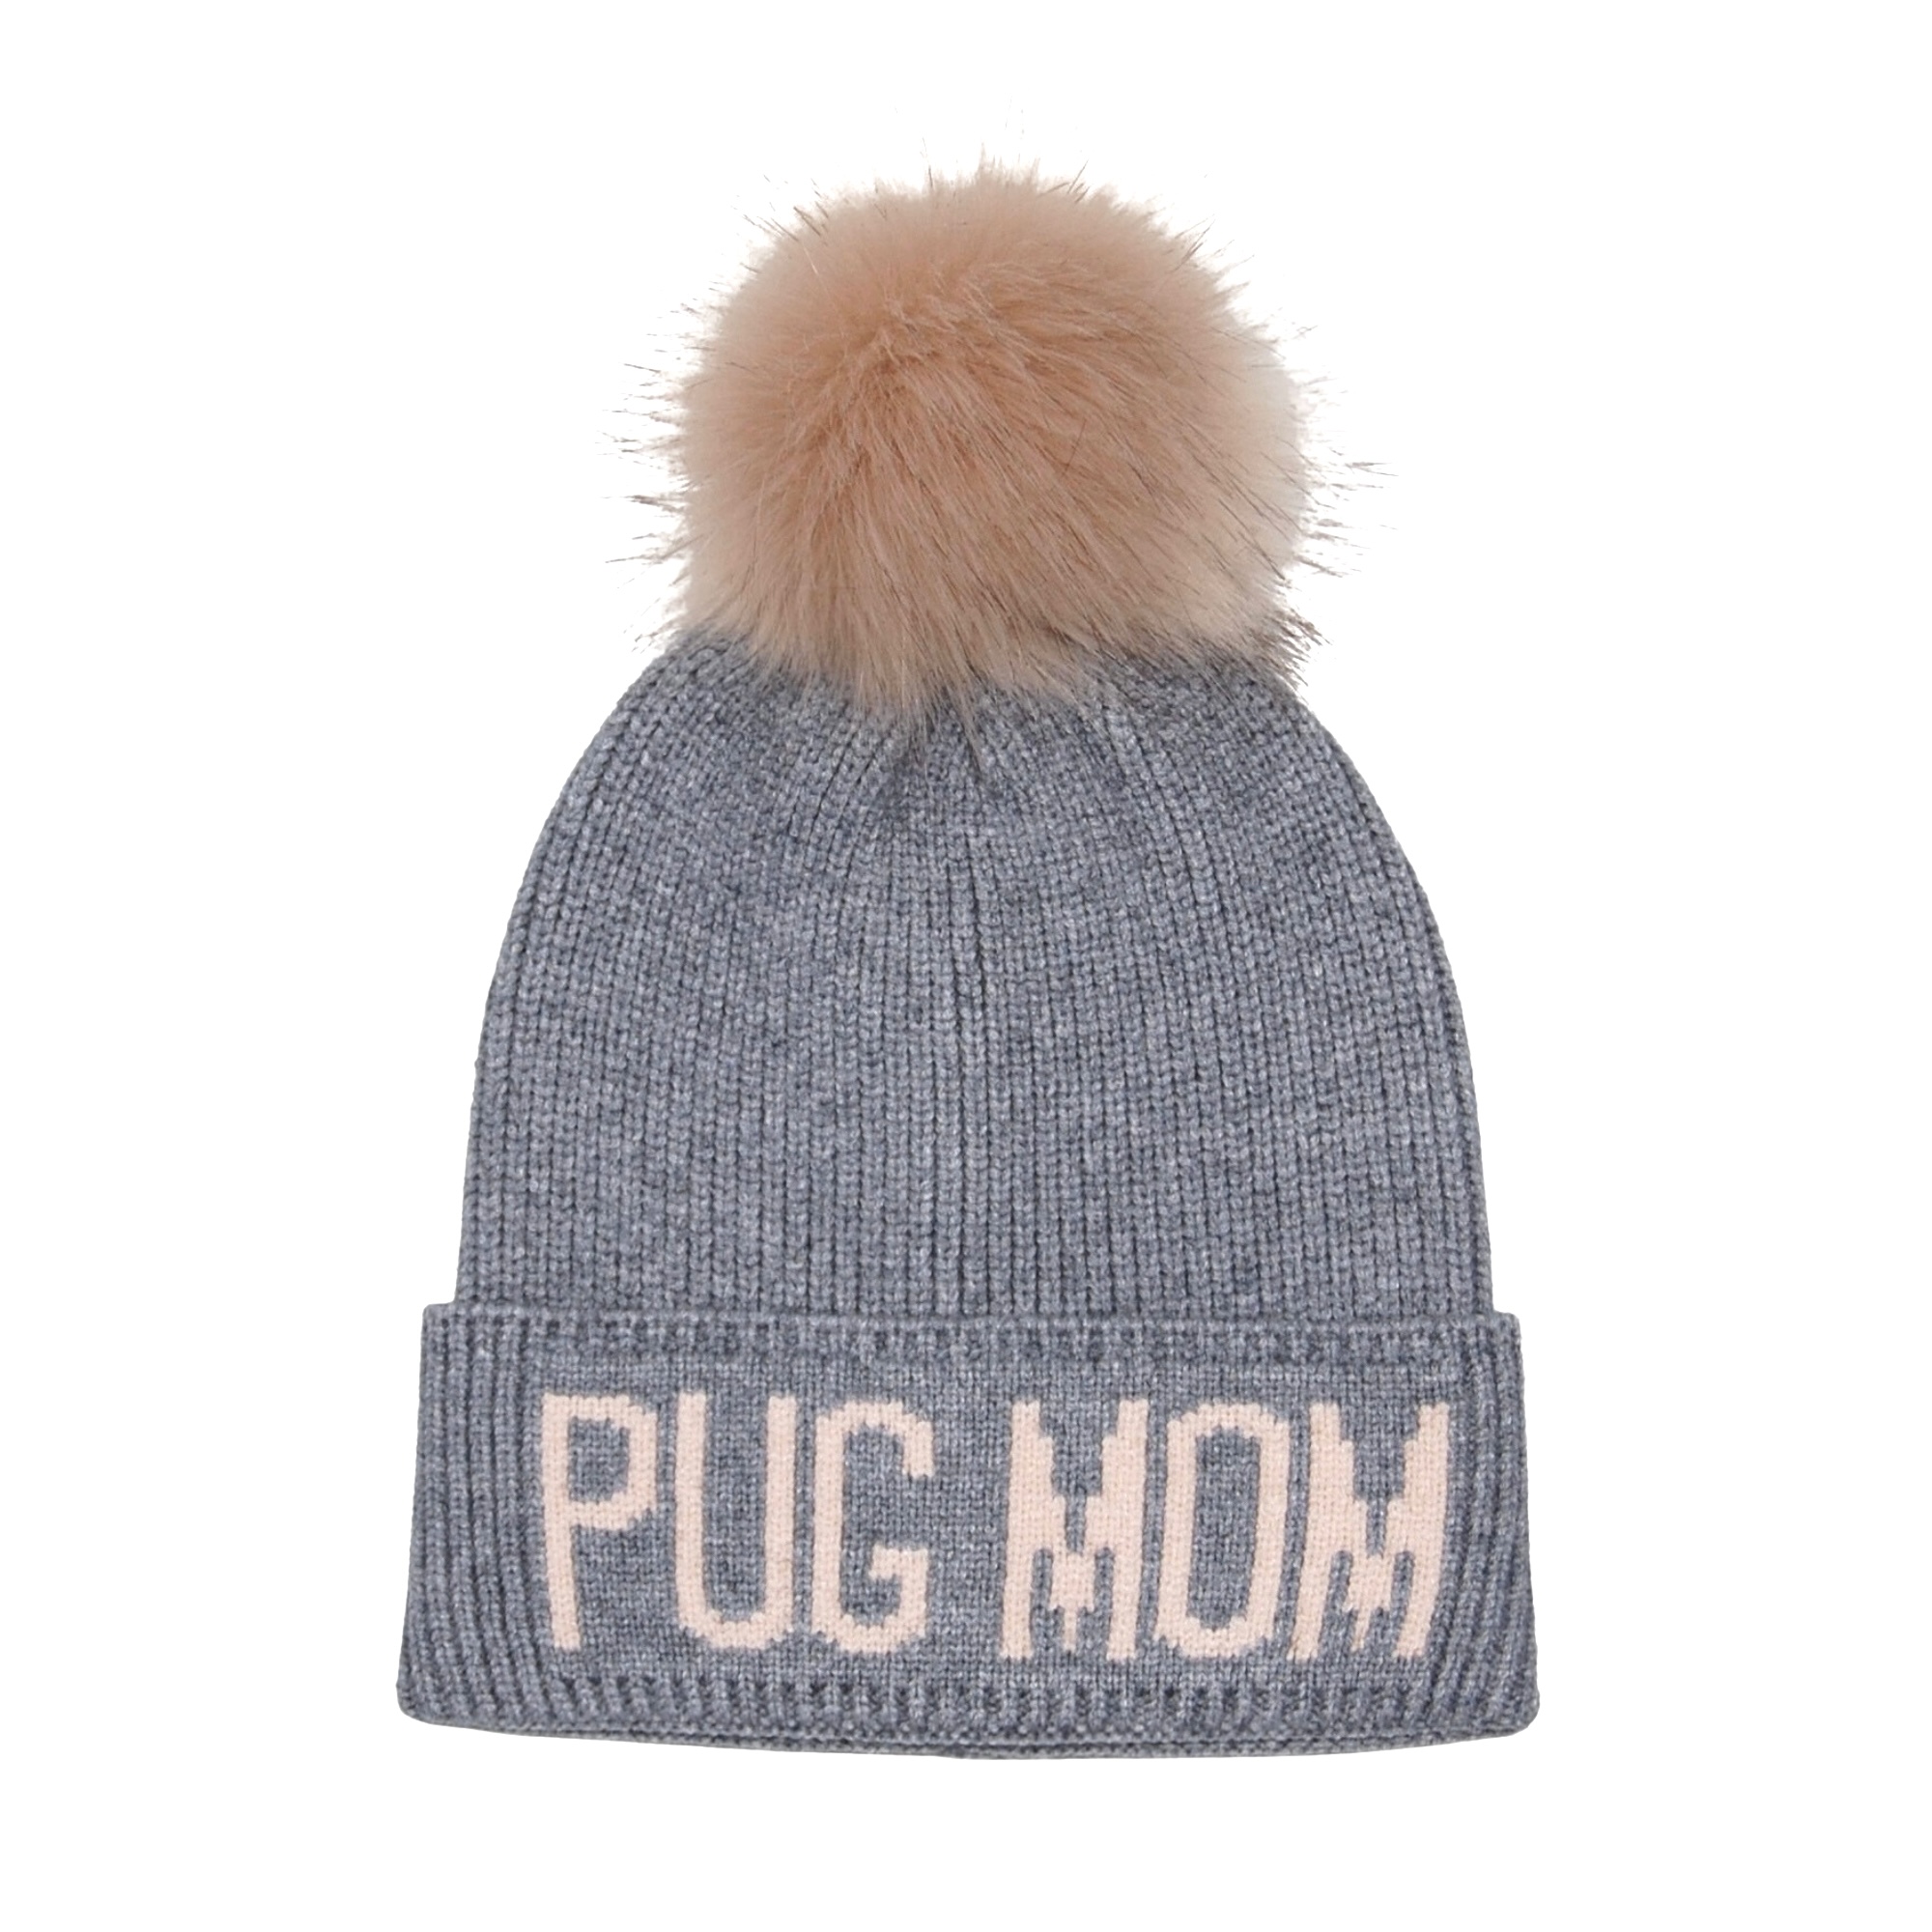 Hatodm Pug Mom Pompom Knit Beanie Toque